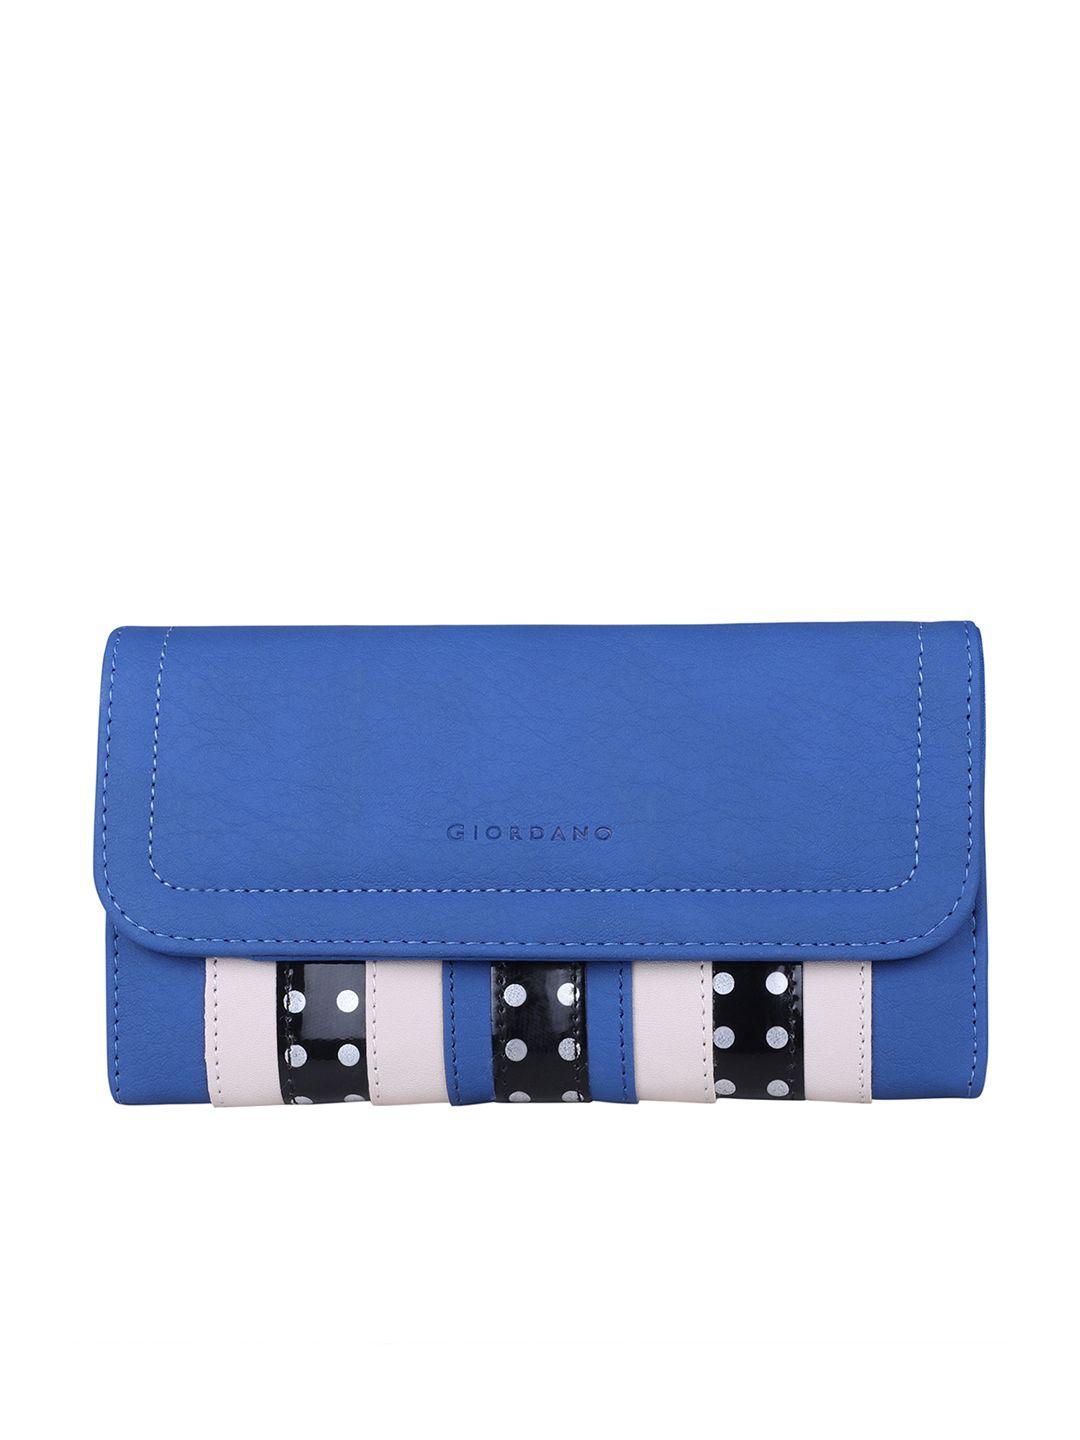 giordano women blue & beige striped three fold wallet